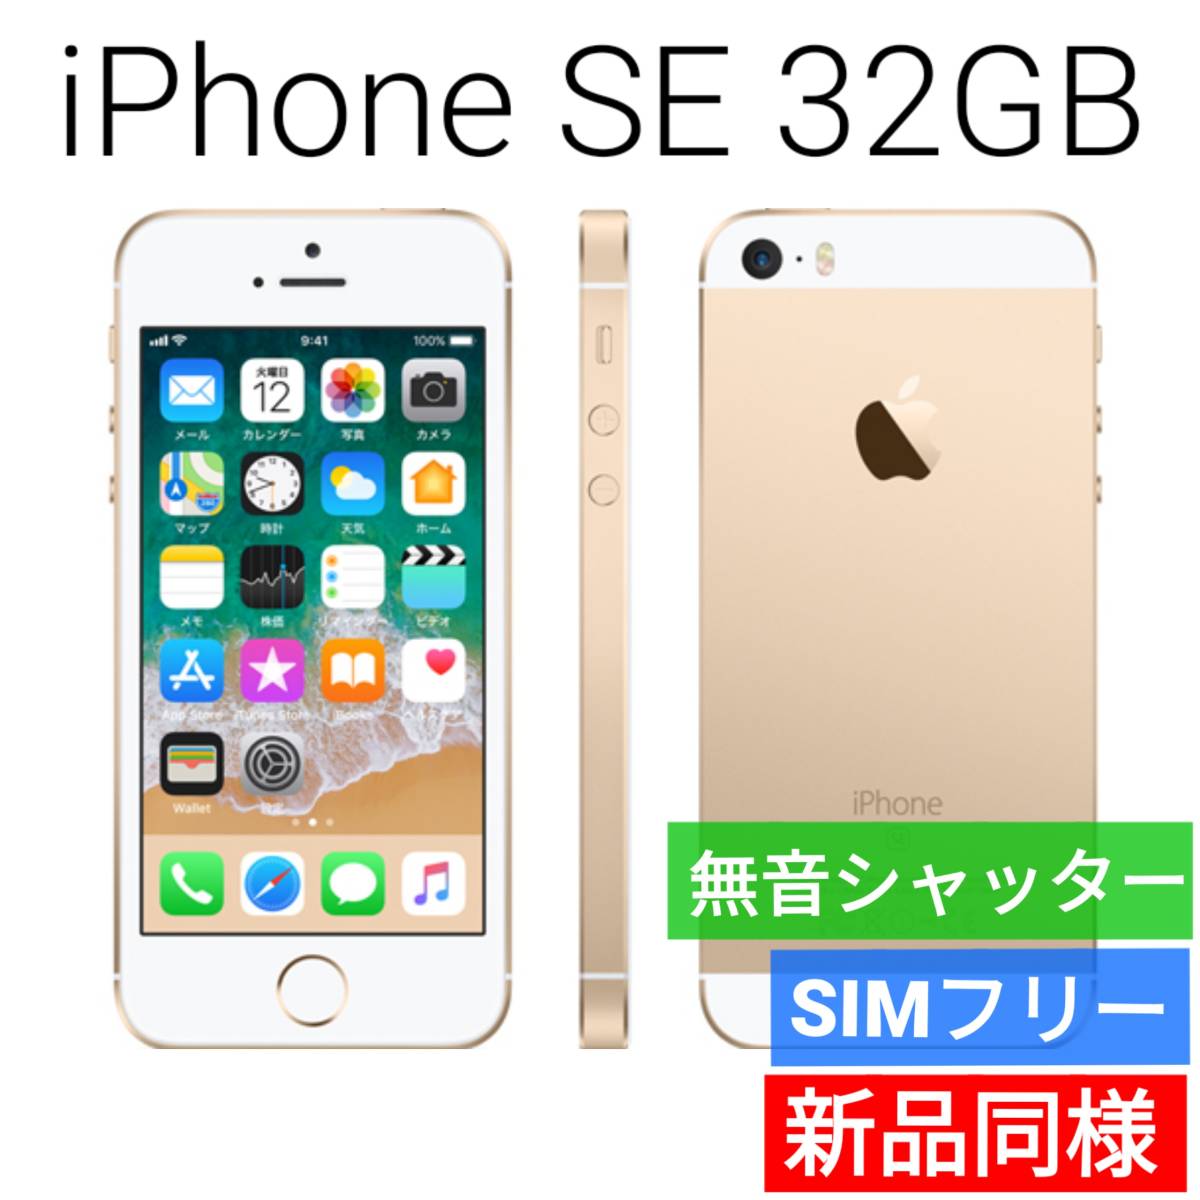 新品同等 iPhone SE A1723 32GB ゴールド 海外版 SIMフリー シャッター音なし 送料無料 国内発送 IMEI 353848089492008